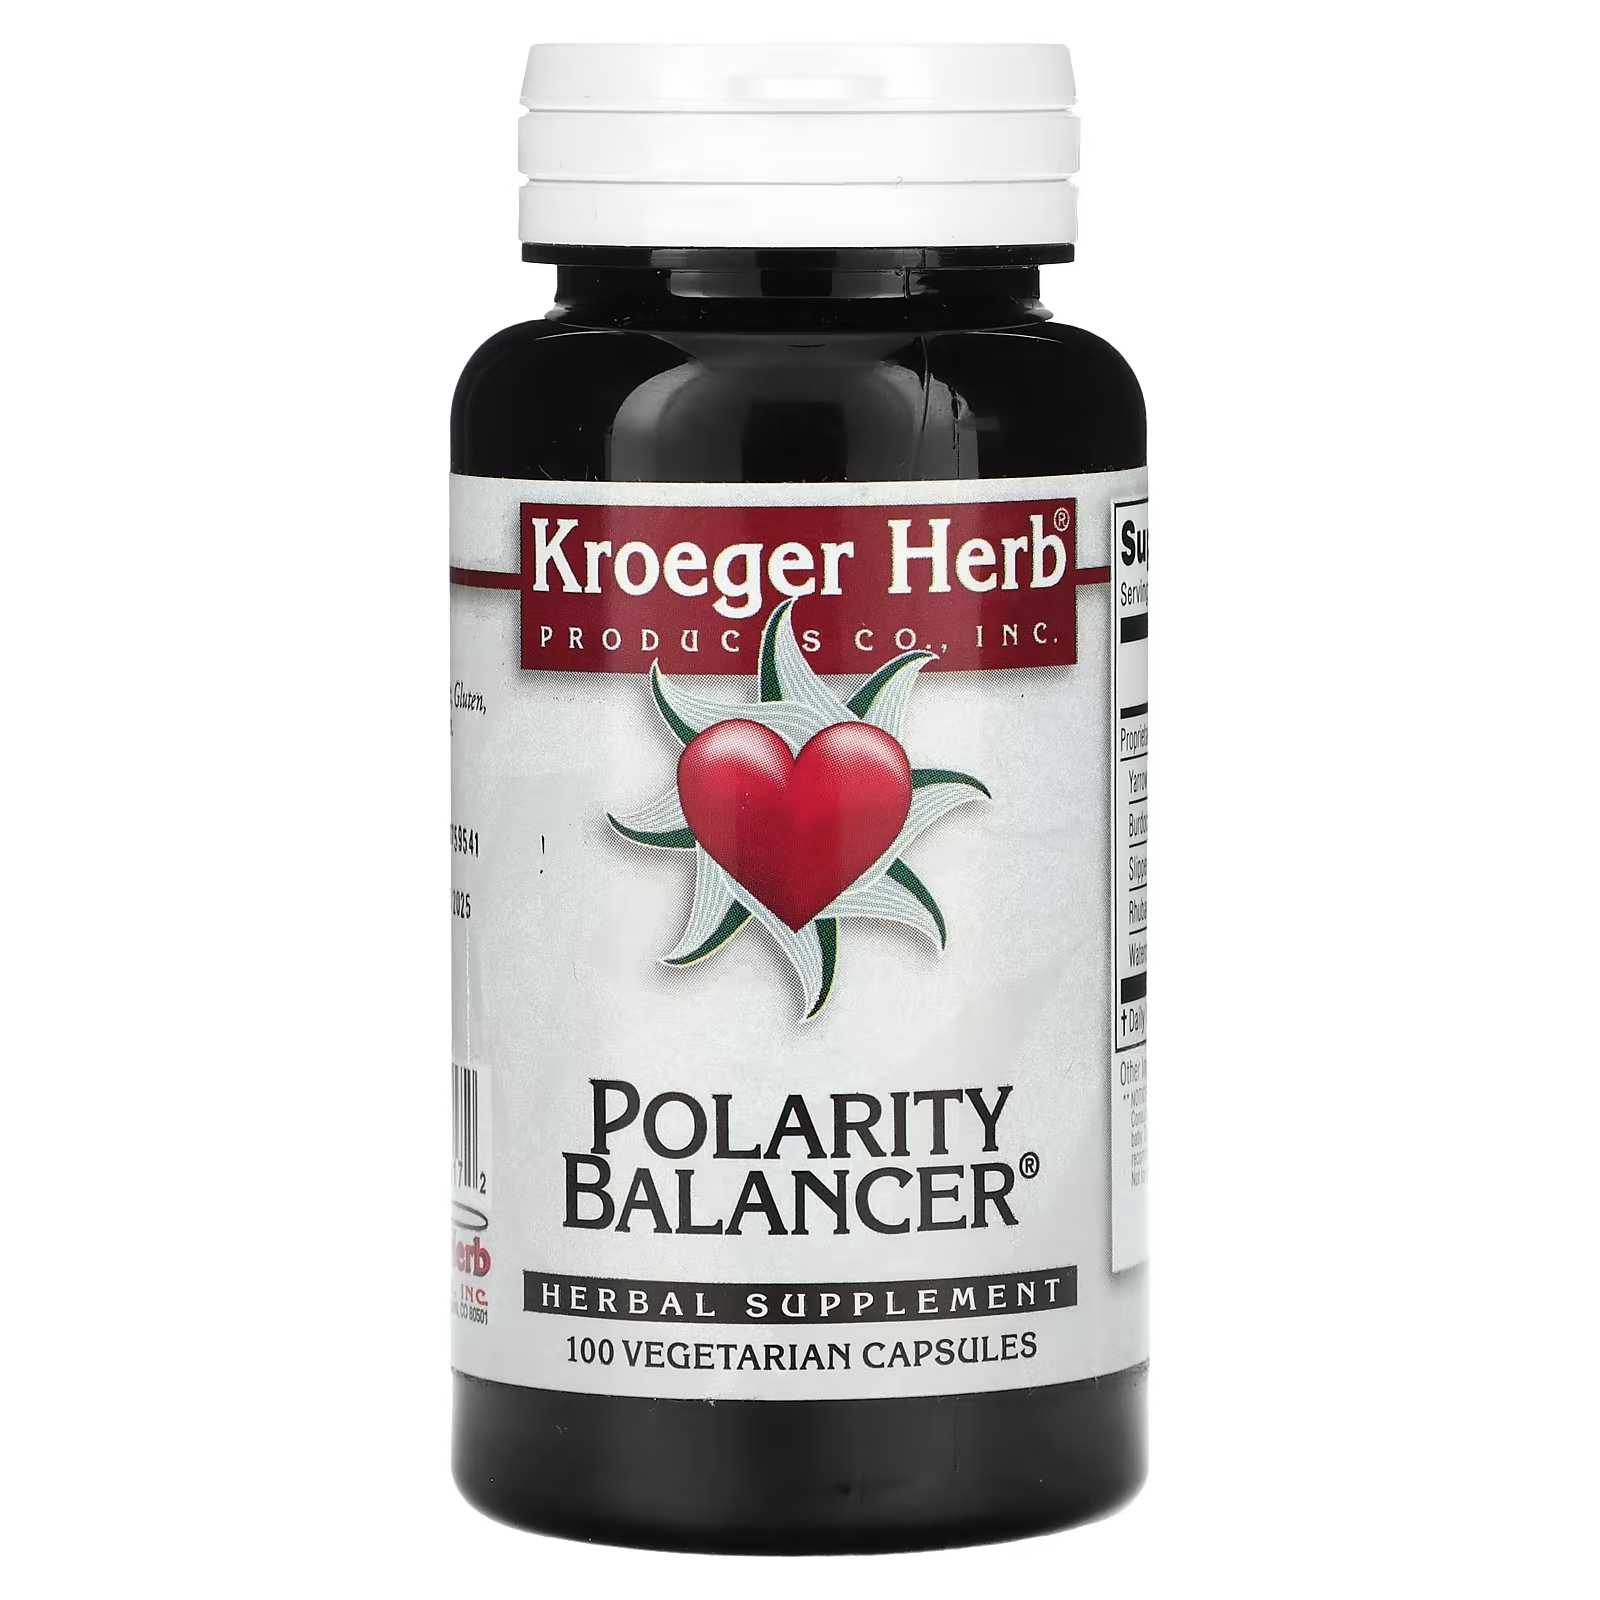 Растительная добавка Kroeger Herb Co балансировщик полярности, 100 капсул растительная добавка kroeger herb co fng care 100 капсул